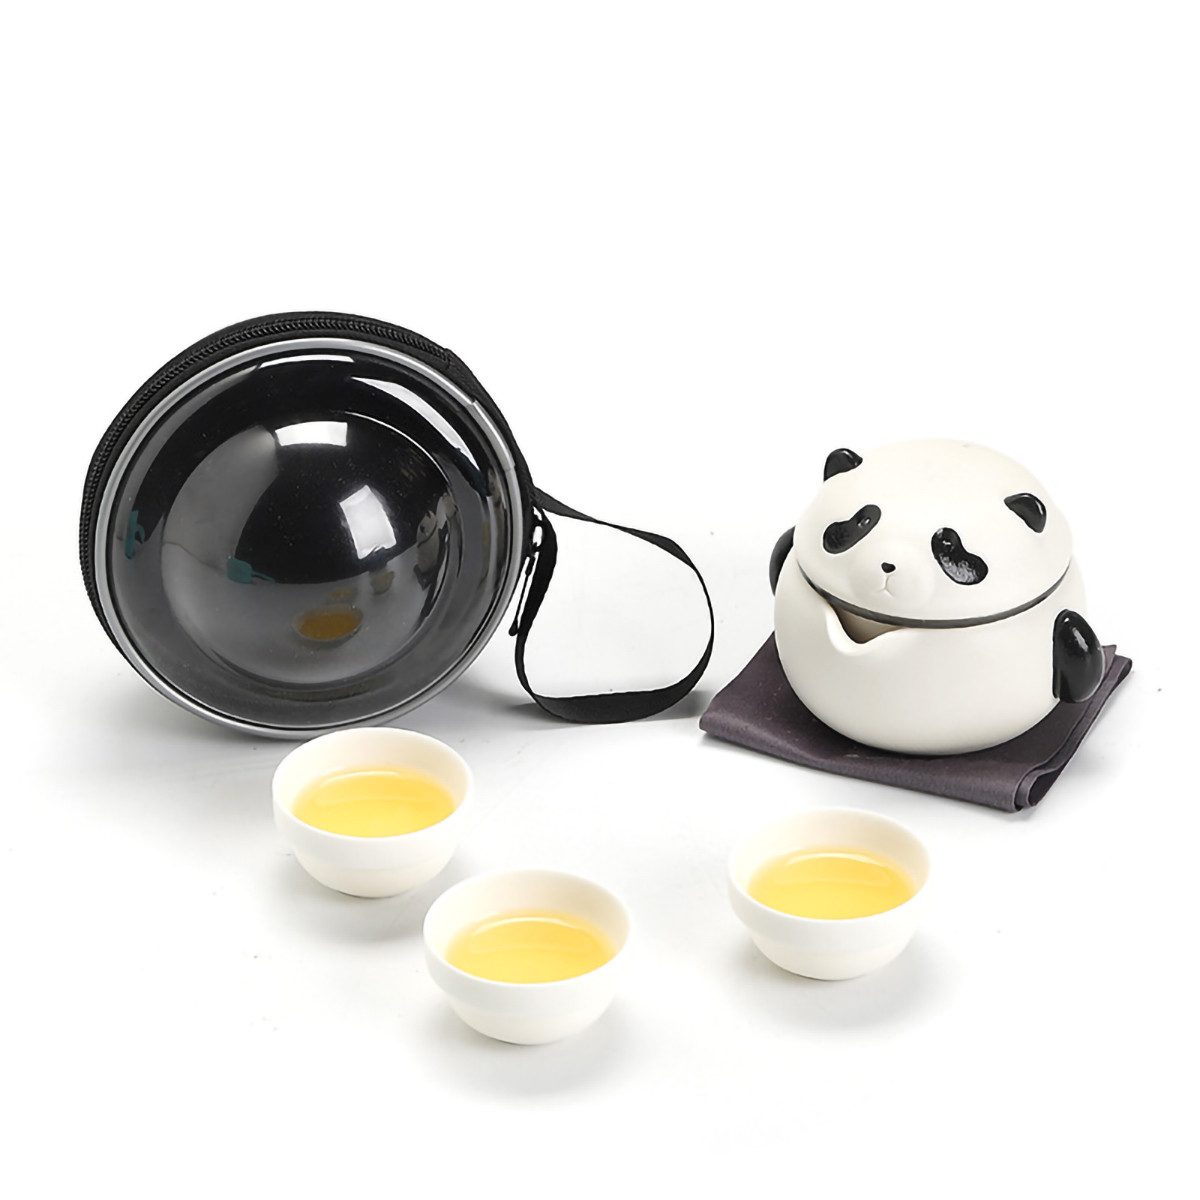 yozhiqu Geschirr-Set 1 Panda-Teeservice aus Keramik, Reise Teetasse mit Sieb und Deckel, Reise-Teeset, tragbar, drei Tassen in einer Kanne, Outdoor-Teekanne